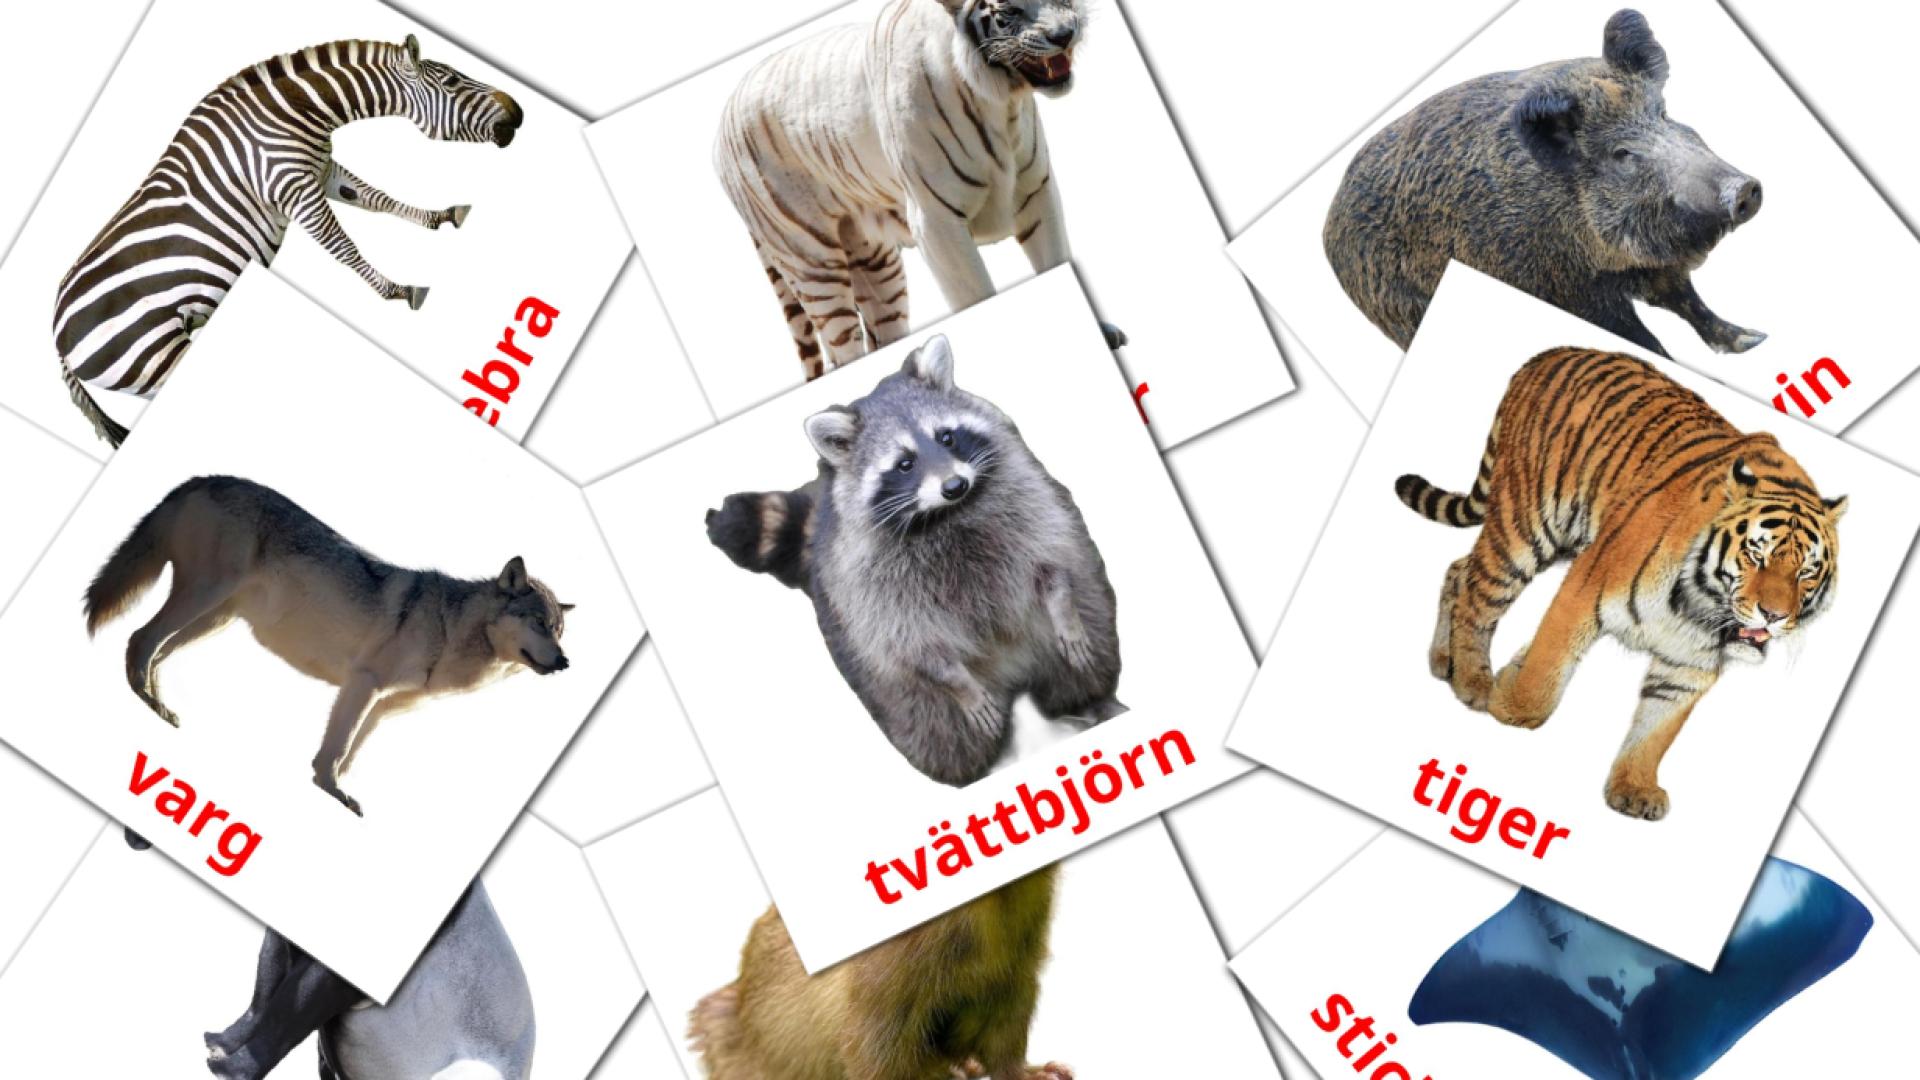 Djur swedish vocabulary flashcards